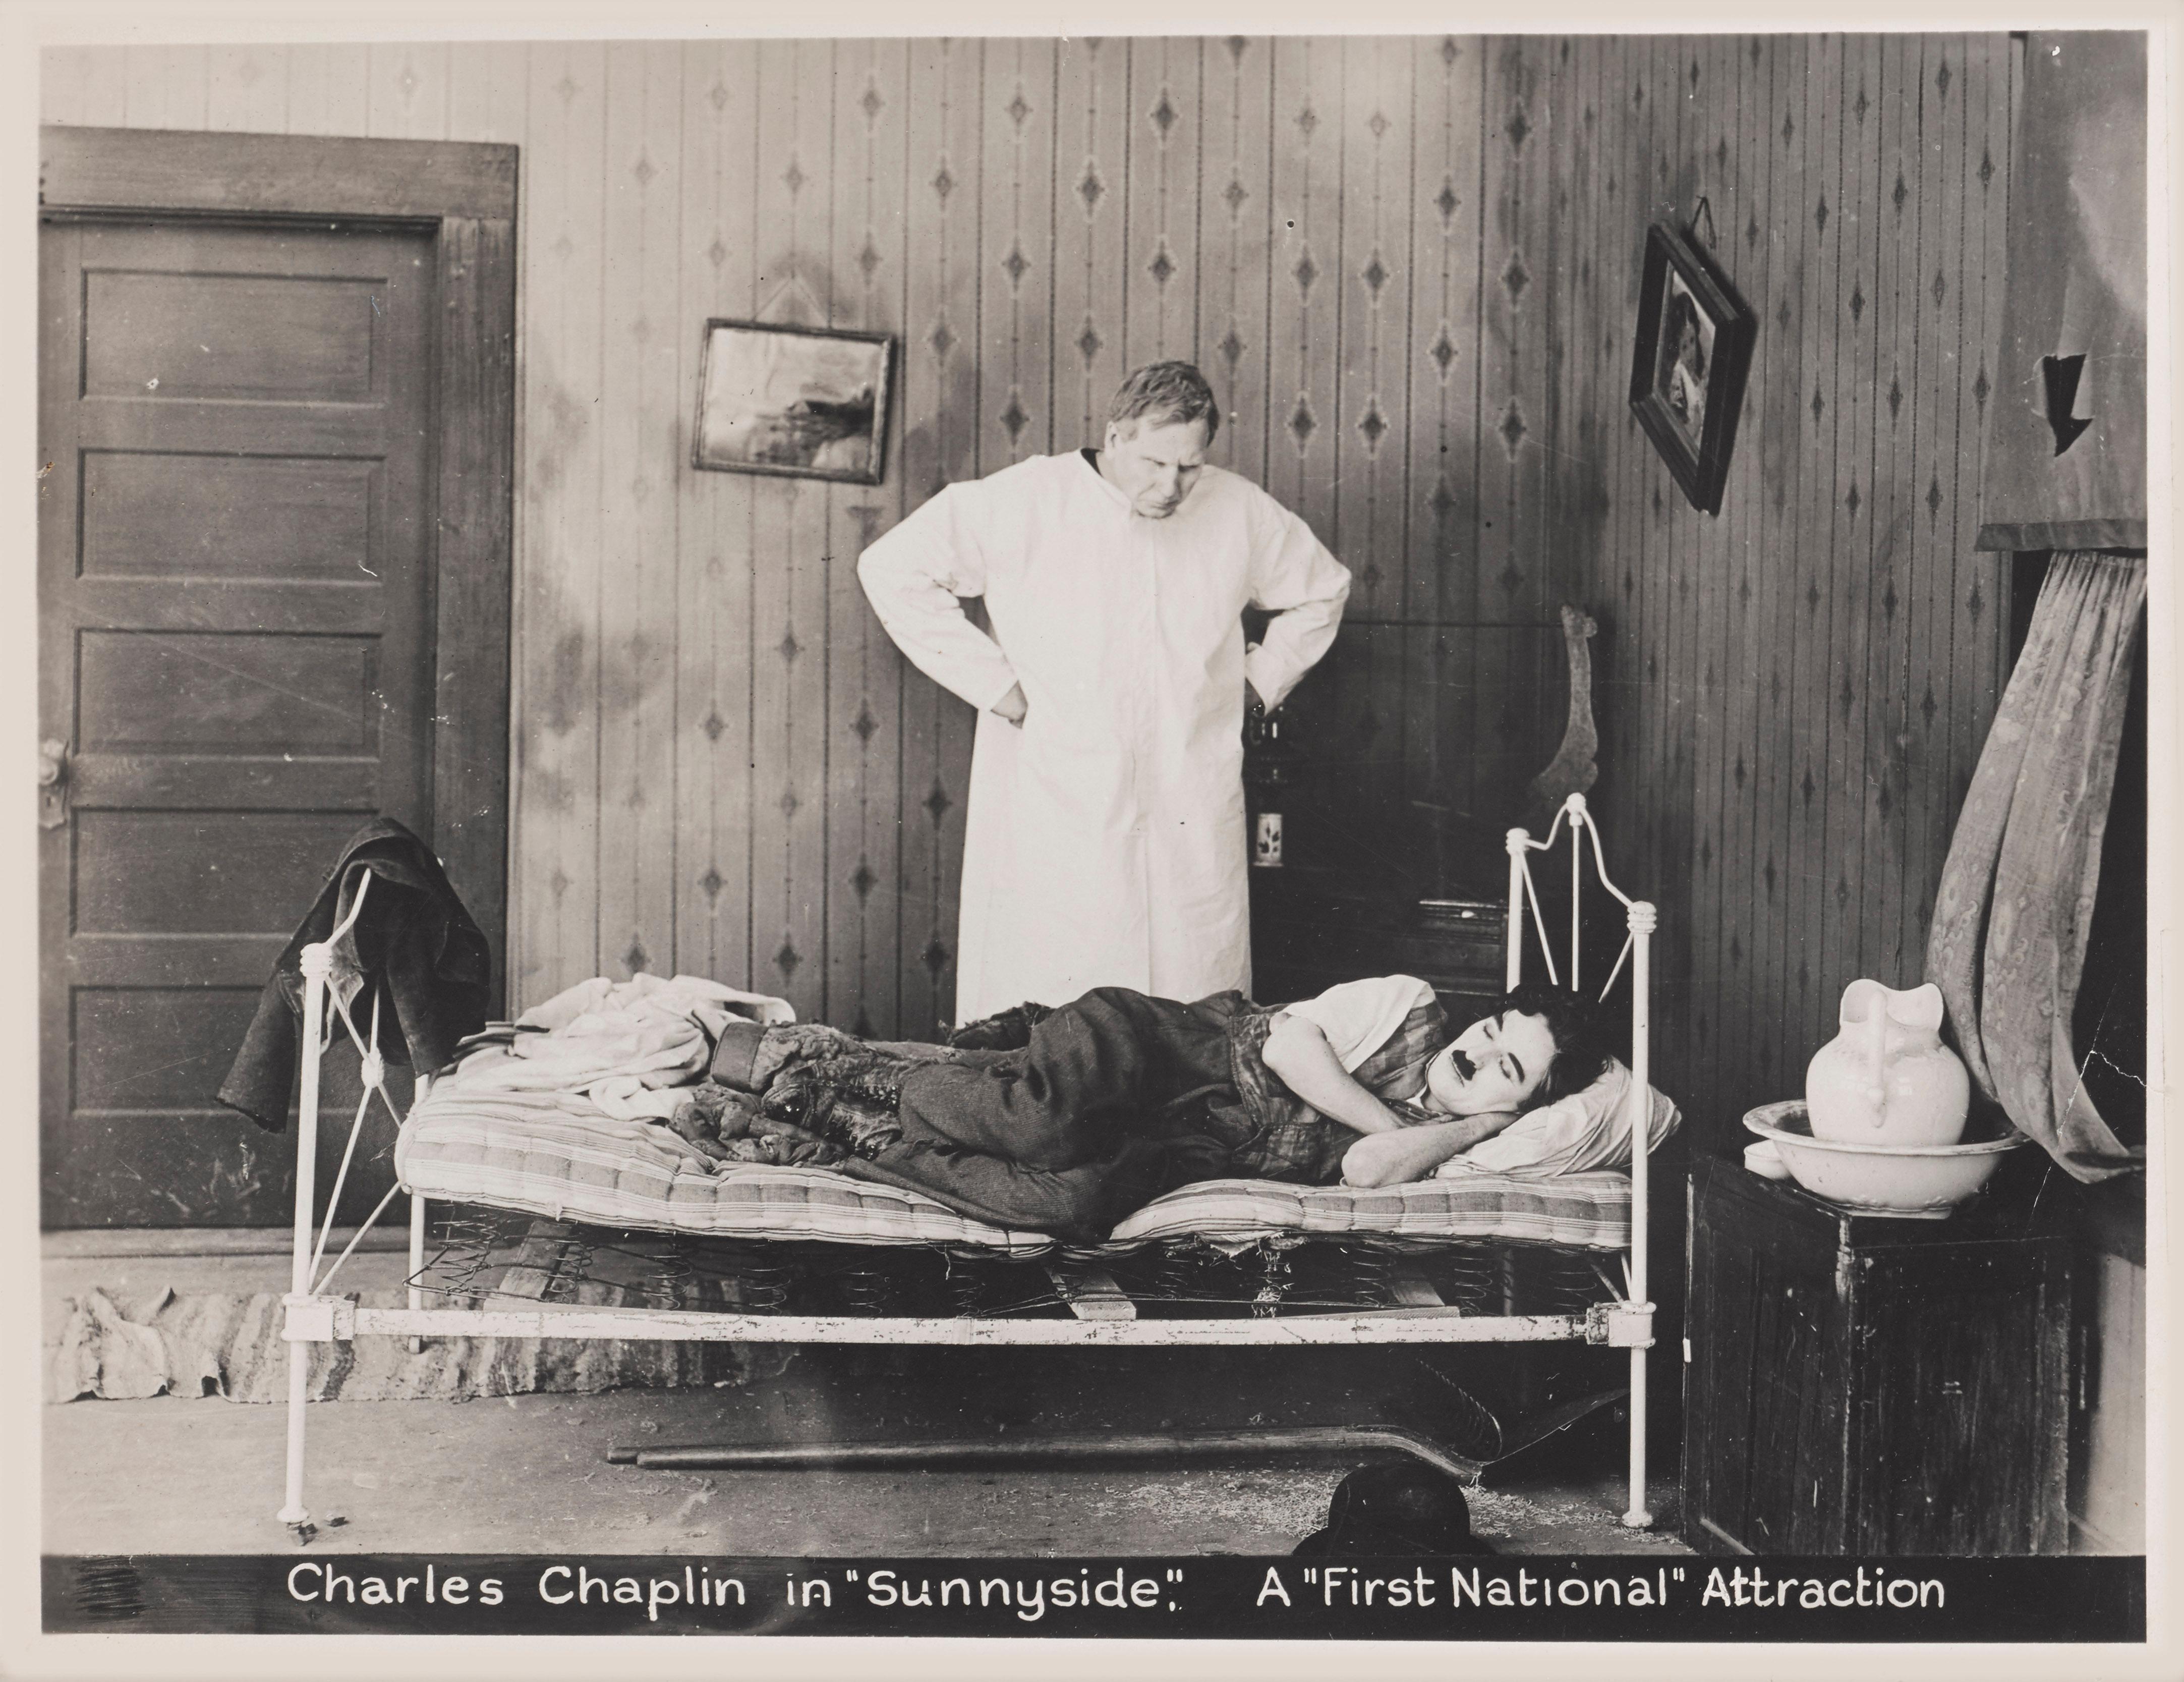 Original US-Produktionsstandbild für die Stummfilmkomödie mit Charlie Chaplin und Edna Purviance von 1919.
Dieser frühe amerikanische Kurzstummfilm wurde von Charlie Chaplin geschrieben und gedreht. Darin arbeitet Charlie verrückte Stunden in einem